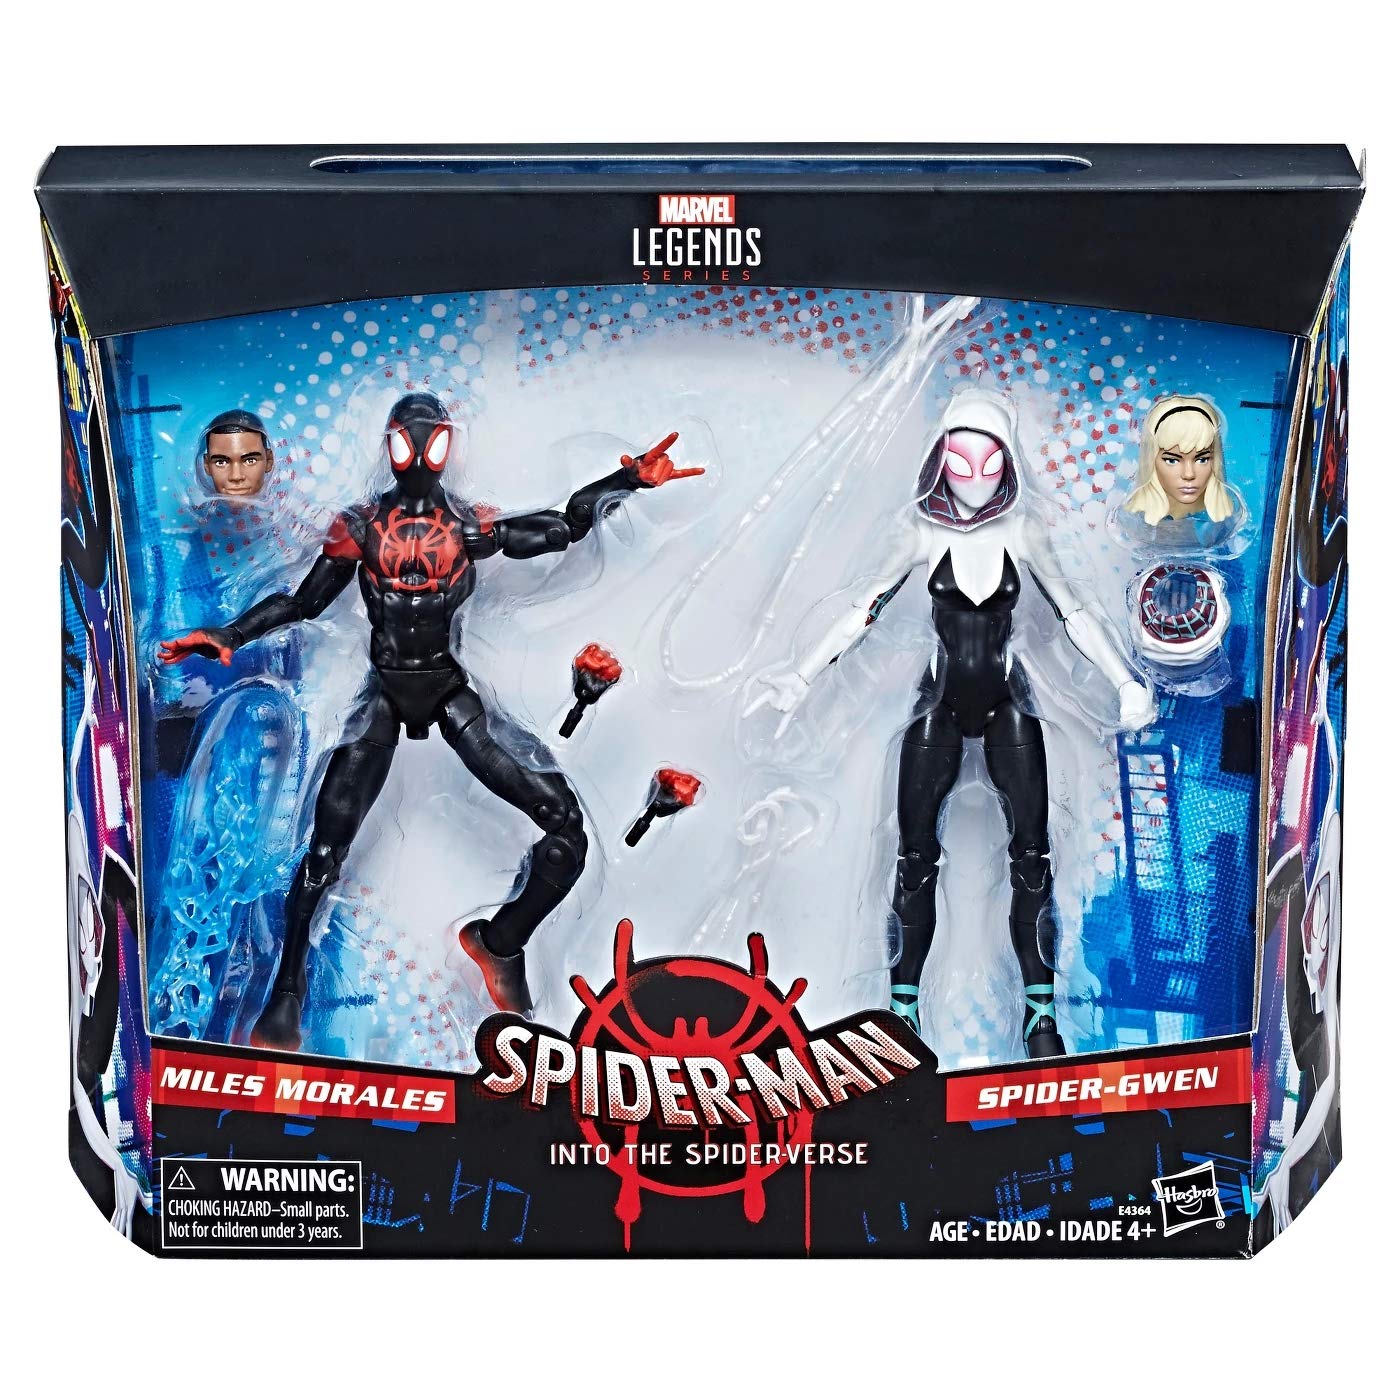 Marvel Legends Spider-Man Miles Morales Spider-Gwen Spider-Verse Exclusive